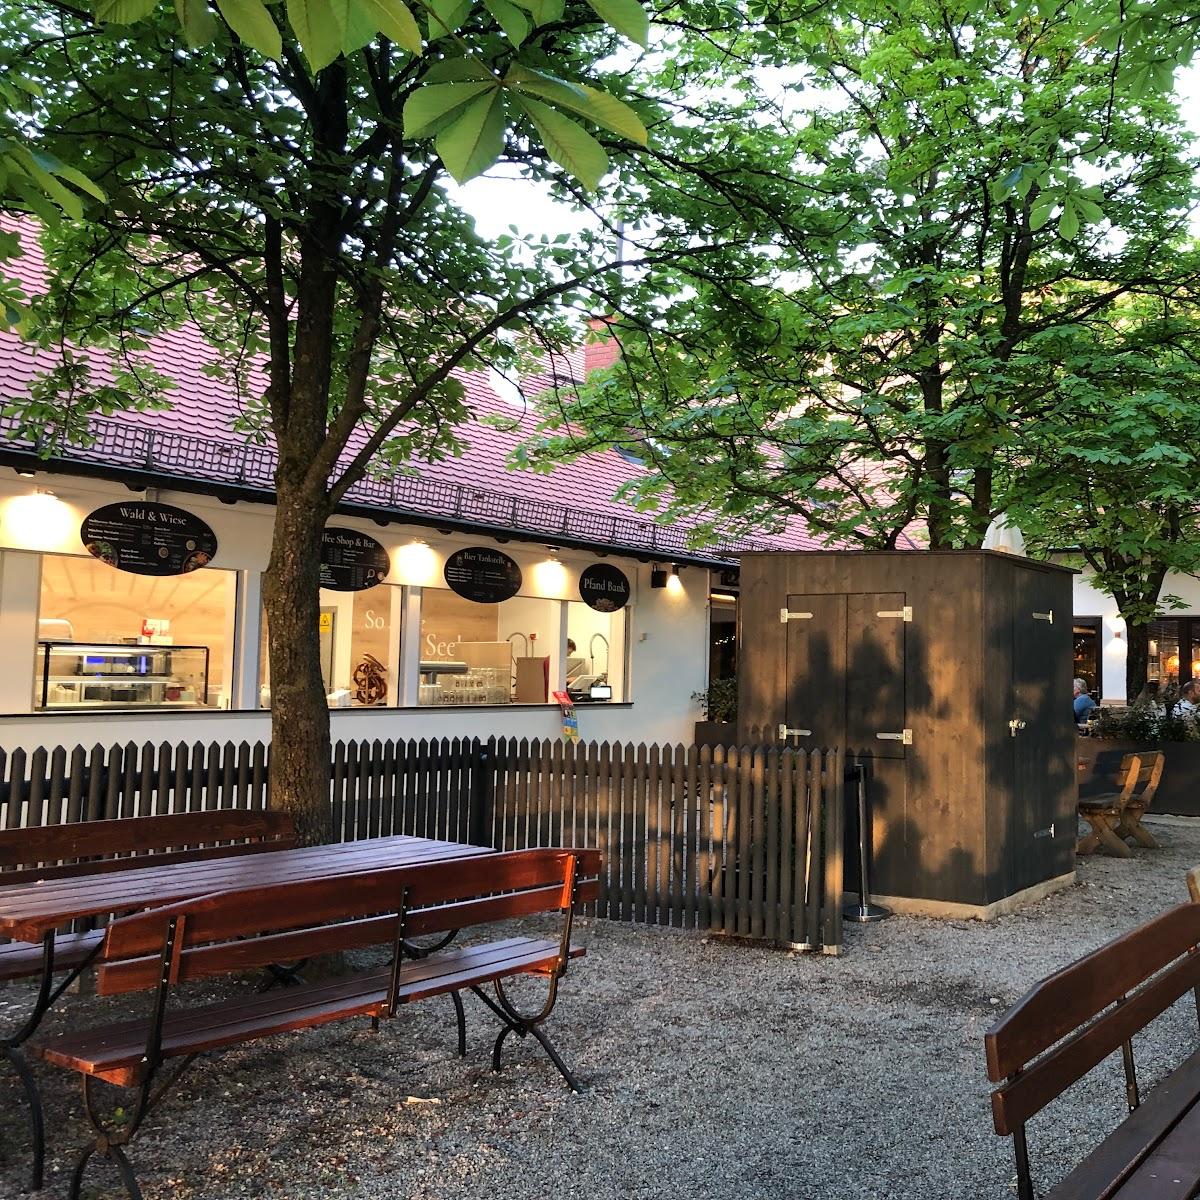 Restaurant "Feringas Seegarten" in Unterföhring